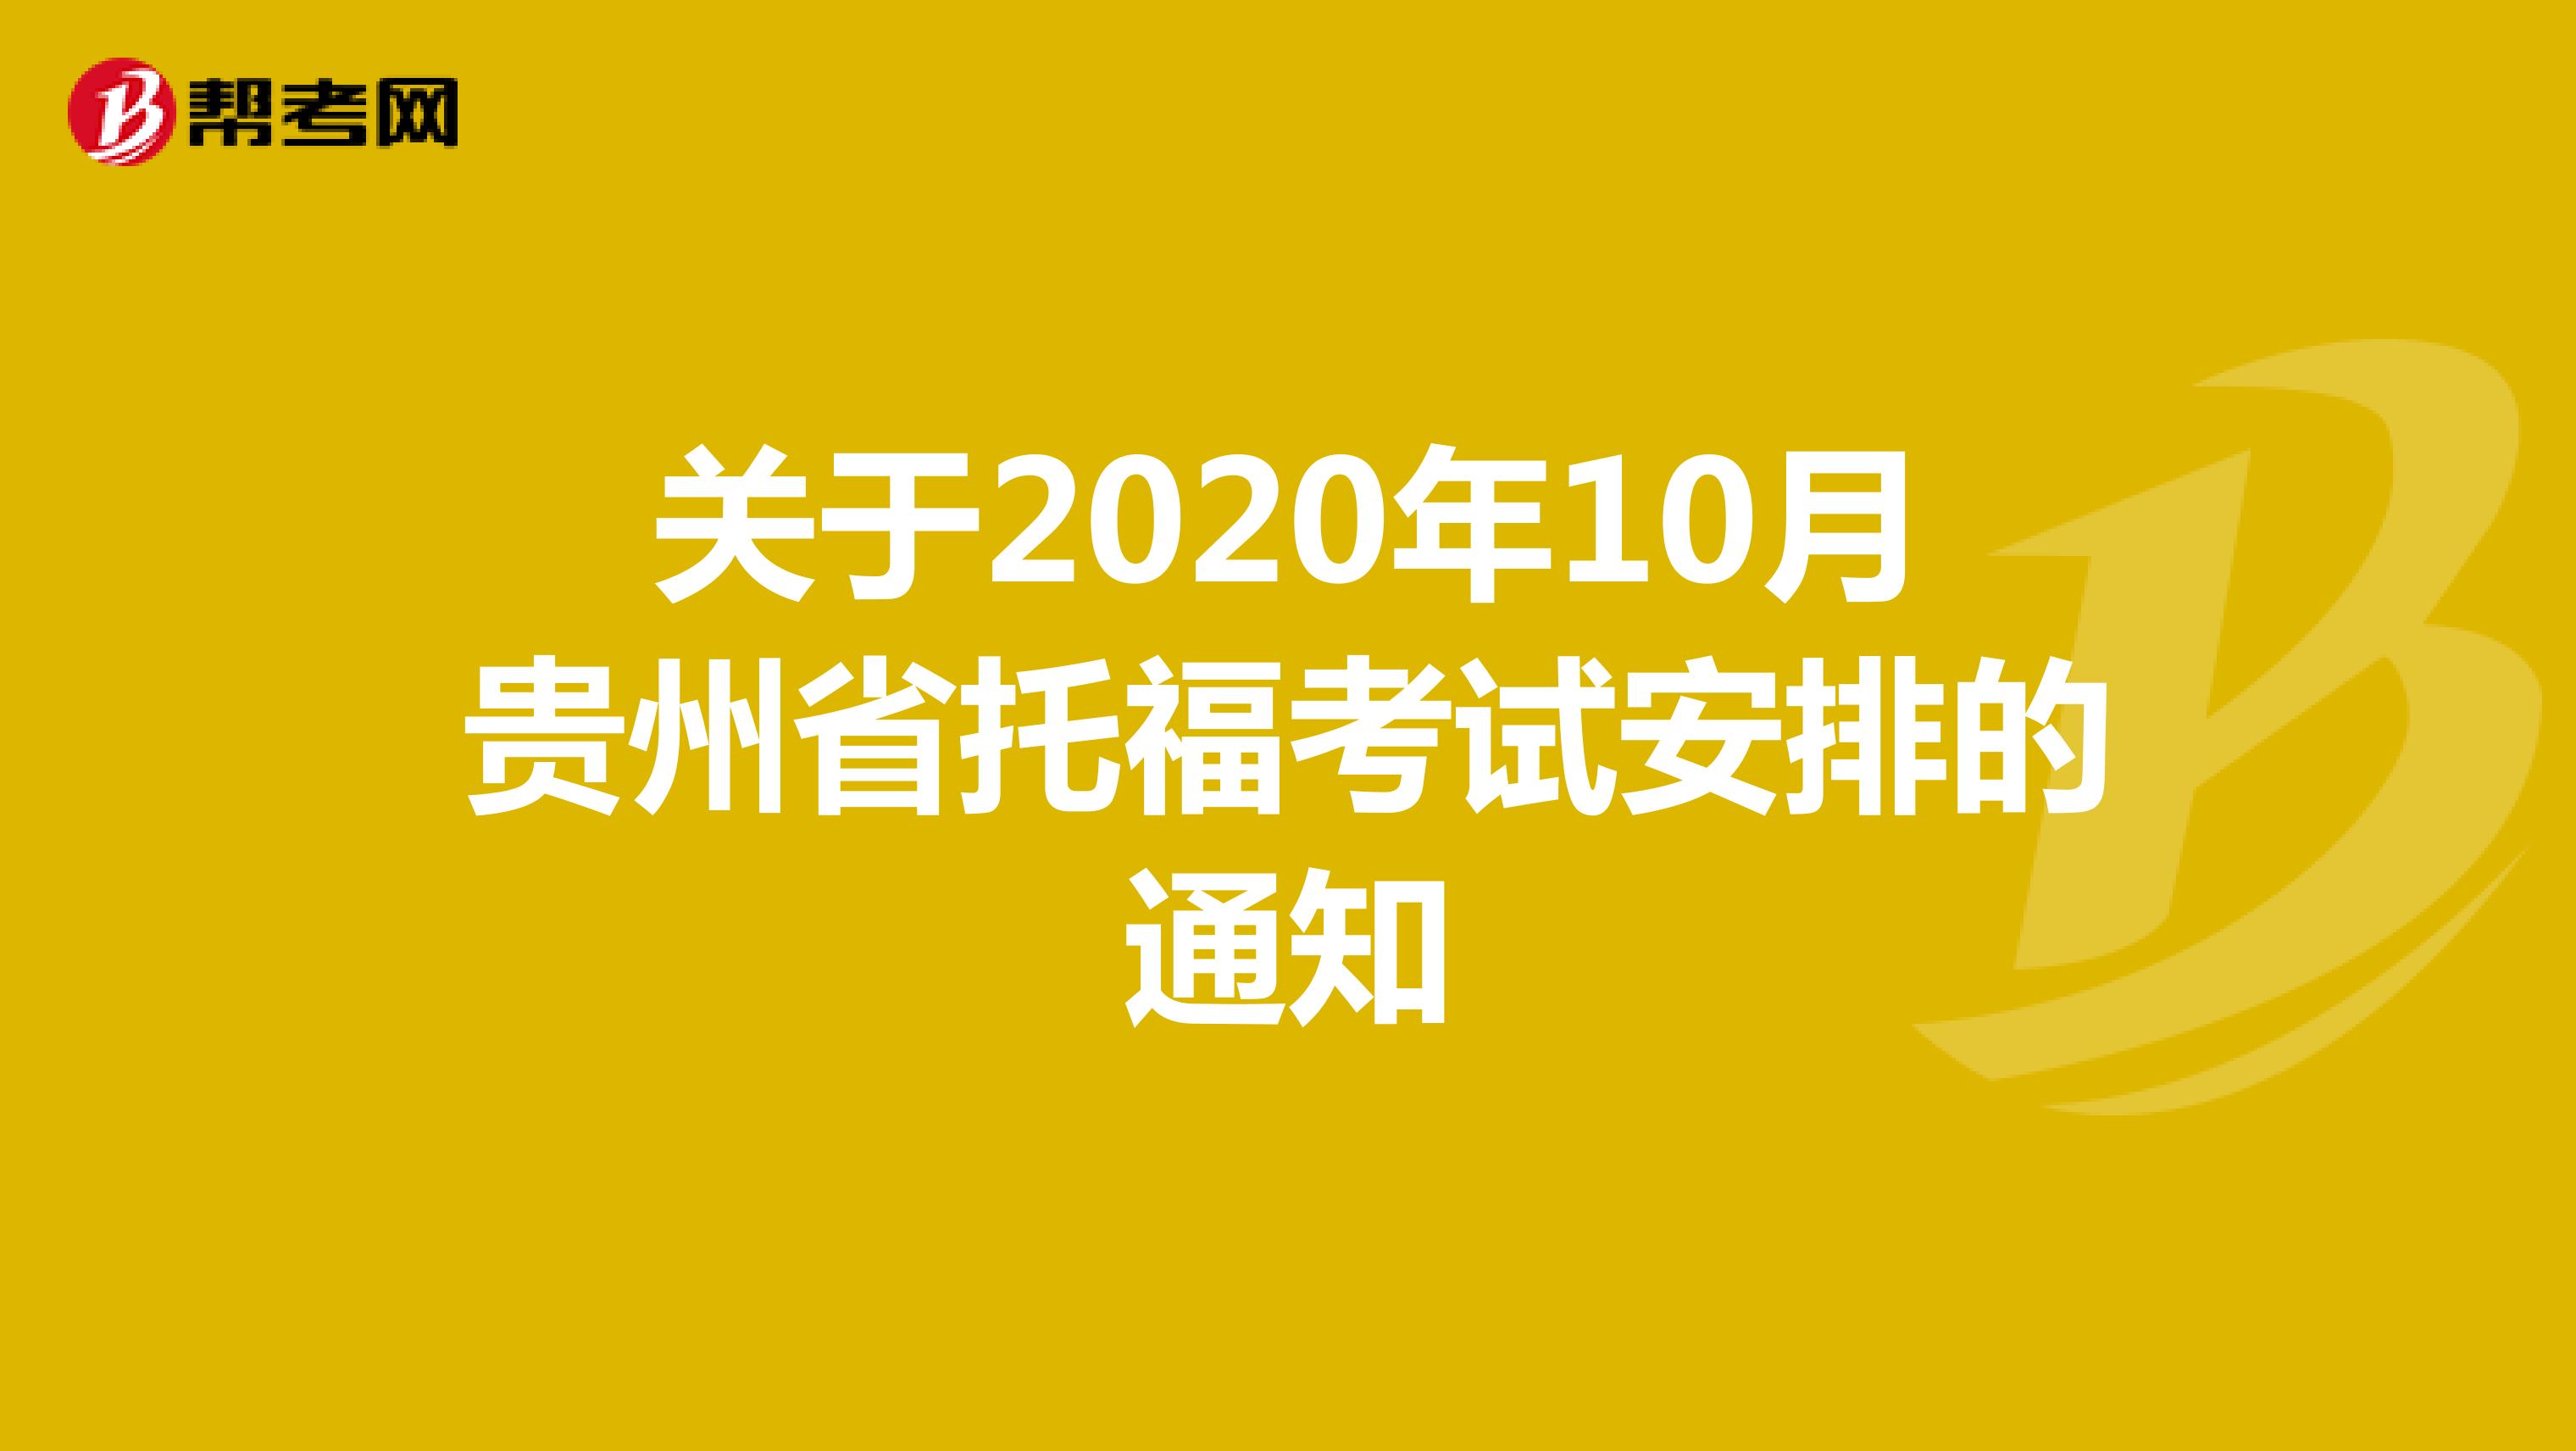 关于2020年10月贵州省托福考试安排的通知